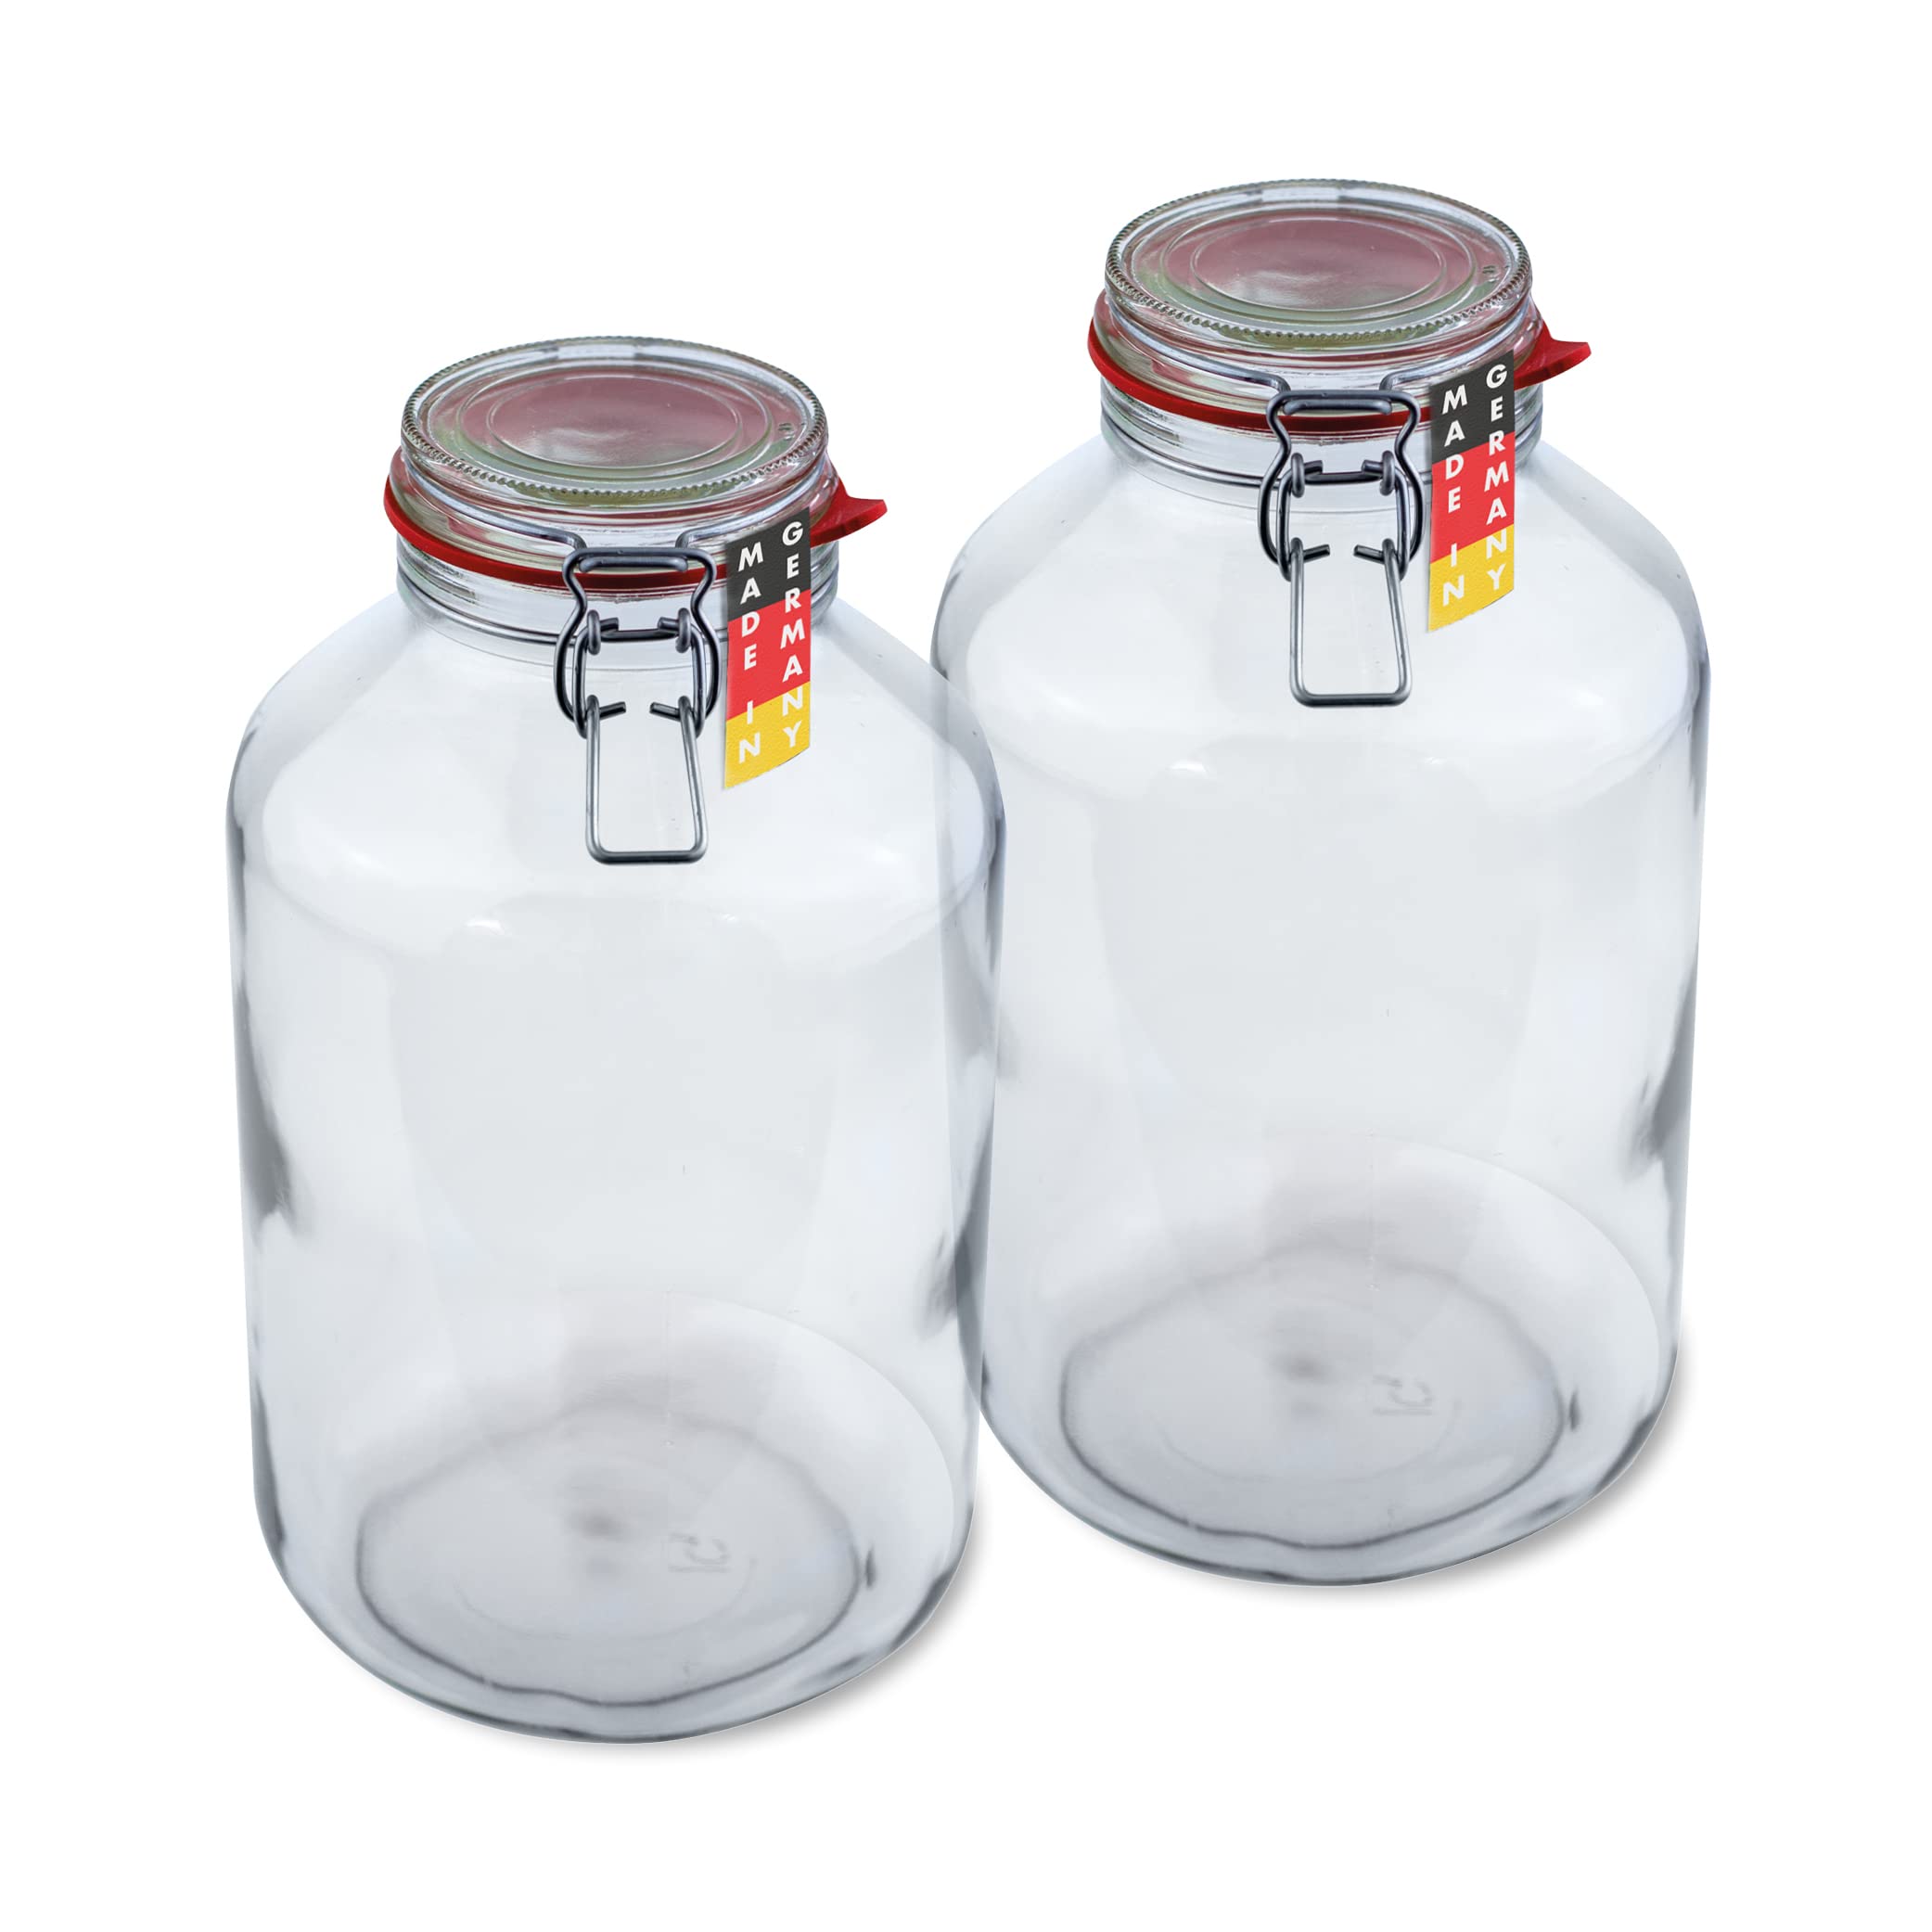 Flaschenbauer - 2-teiliges Set Drahtbügel-Vorratsgläser 4880ml, geeignet als Einmach- und Fermentierglas, zur Aufbewahrung, zum Befüllen, leere Gläser mit Drahtbügel - Made in Germany